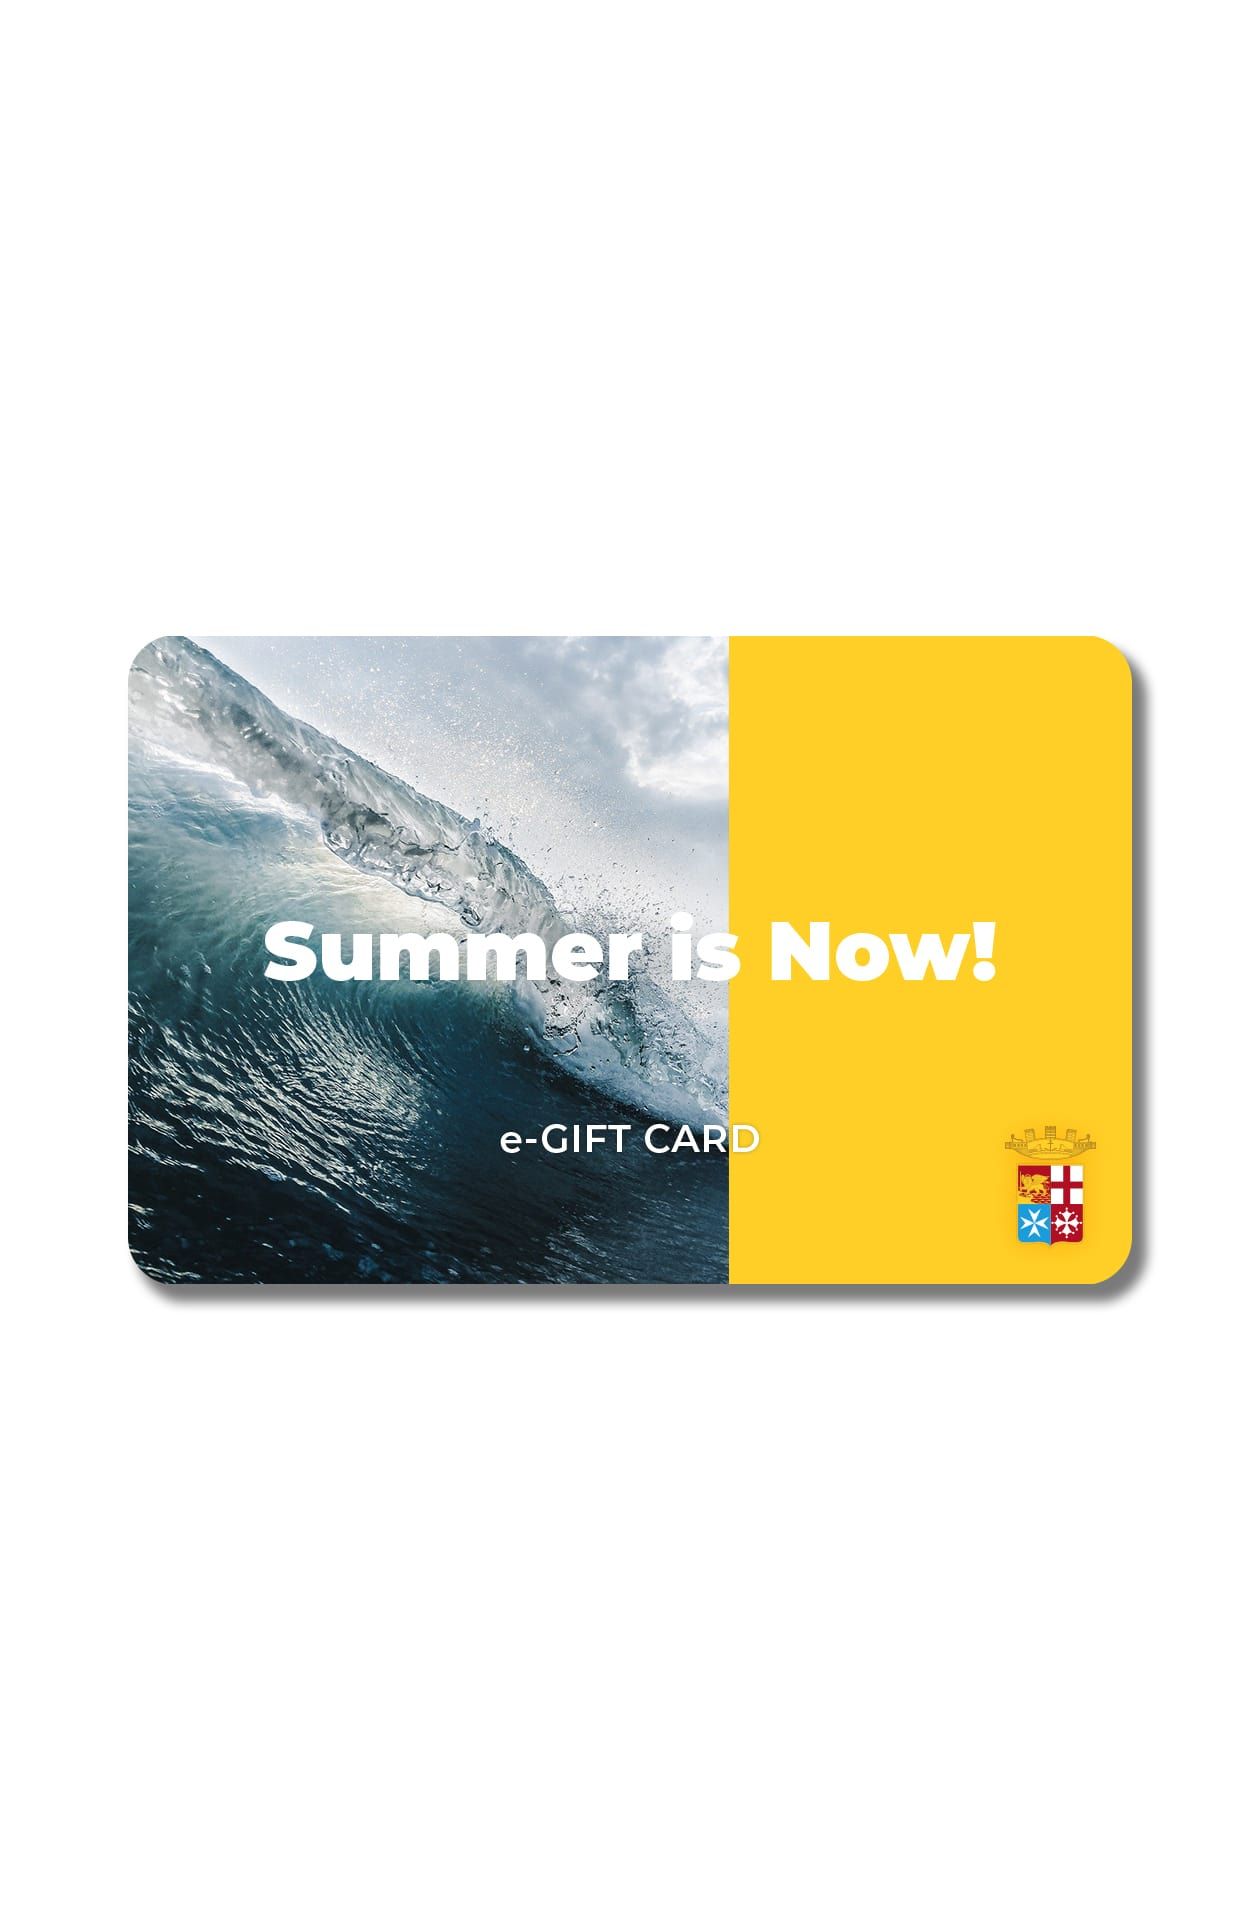 e-Gift Card Marina Militare